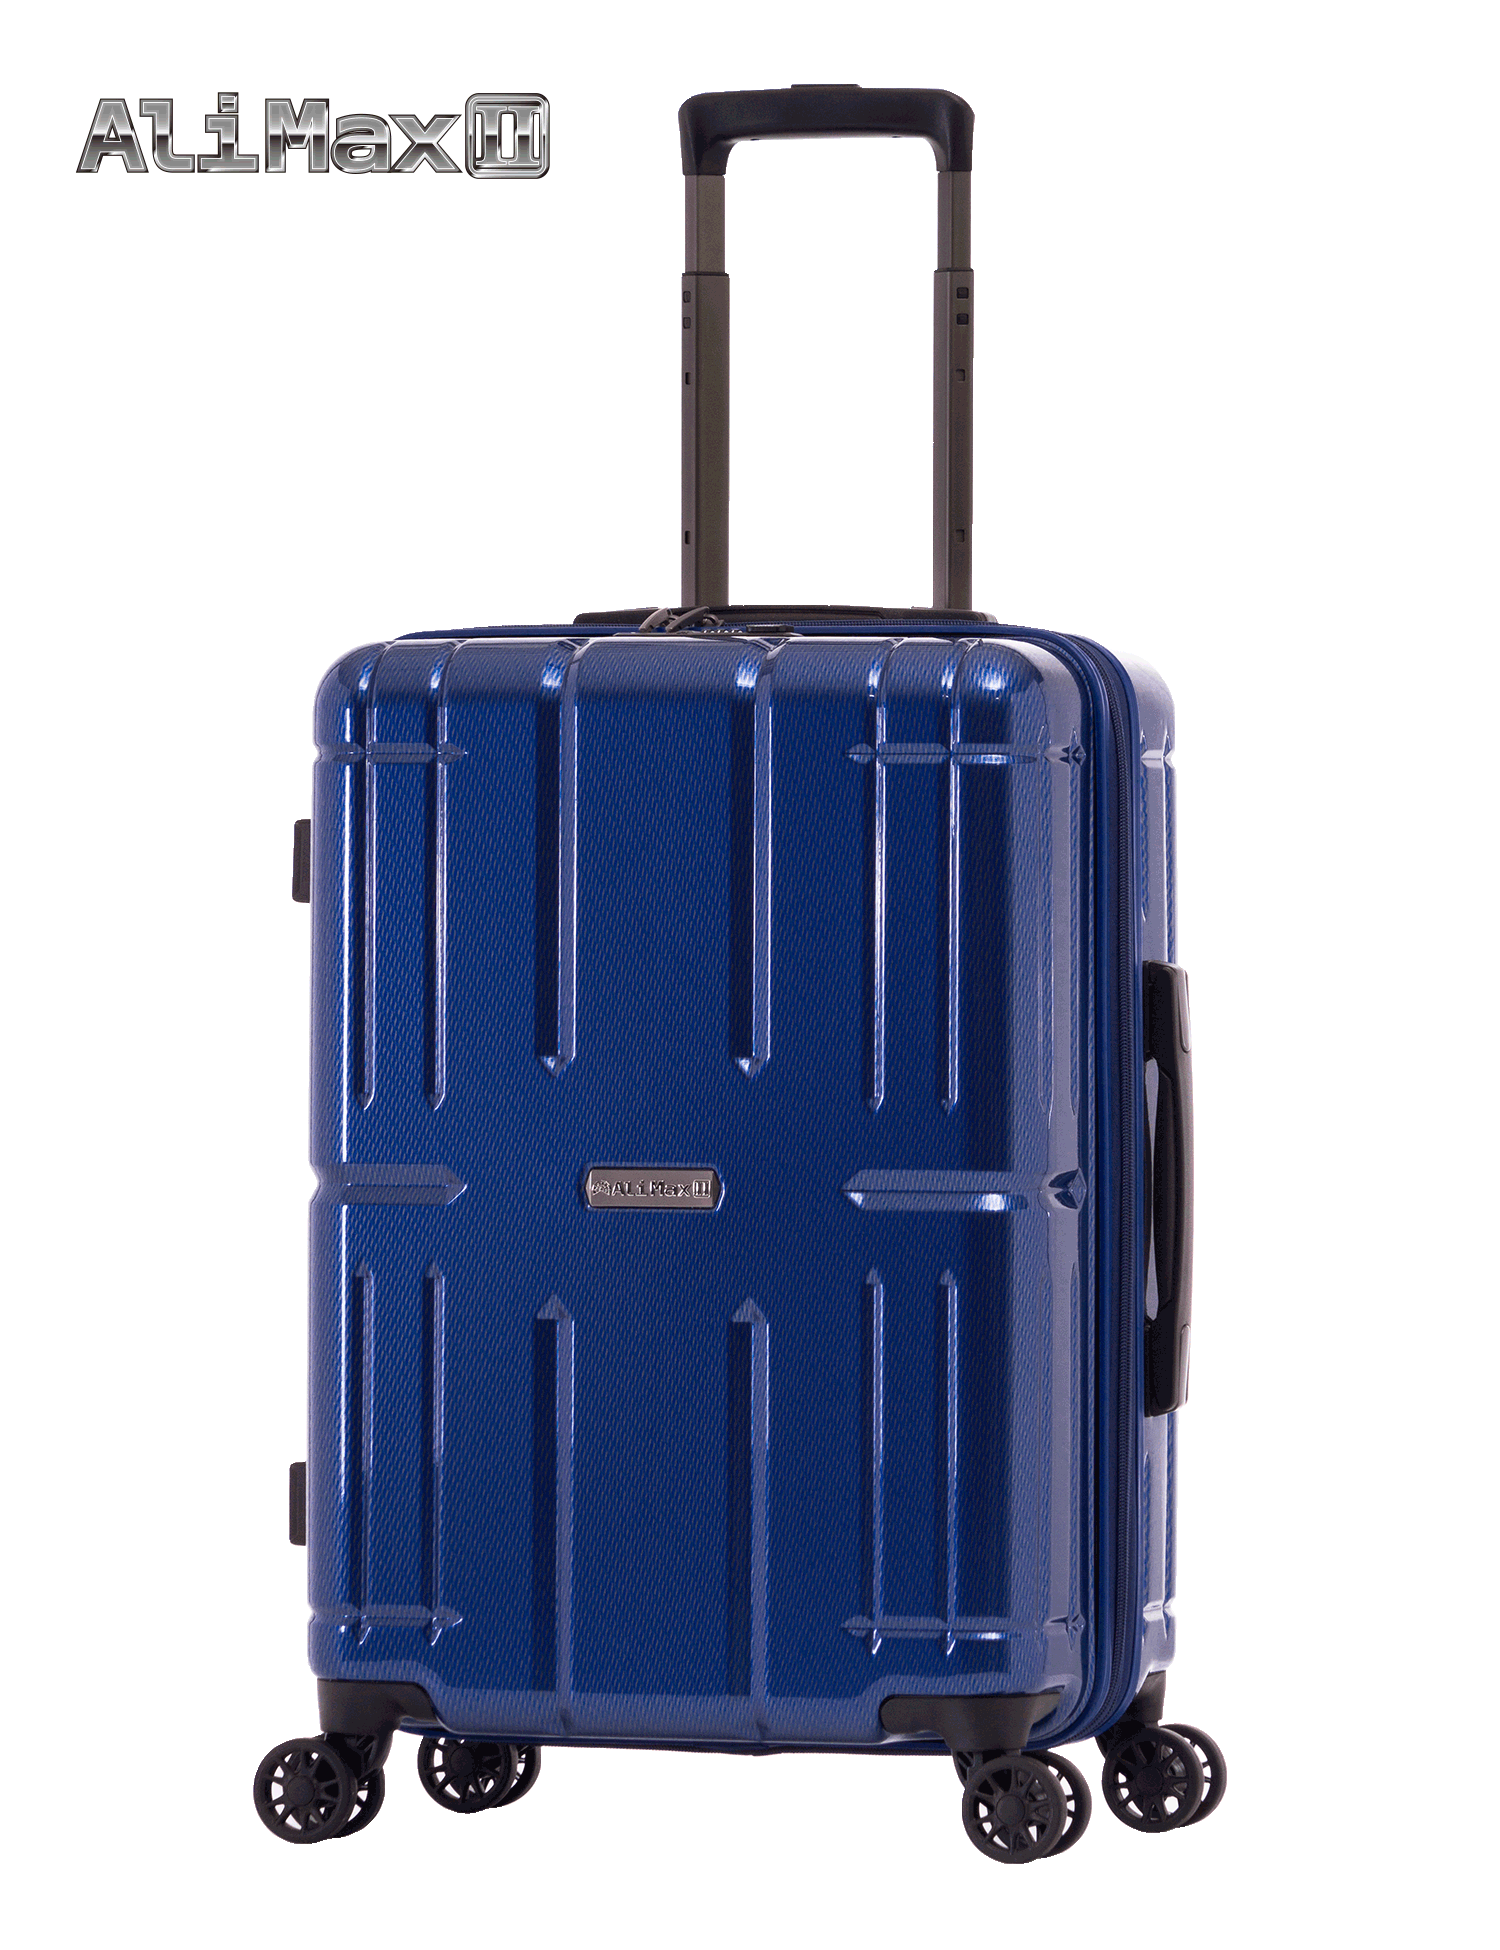 シルバー | アジア・ラゲージ 公式サイト | Asia Luggage Inc.